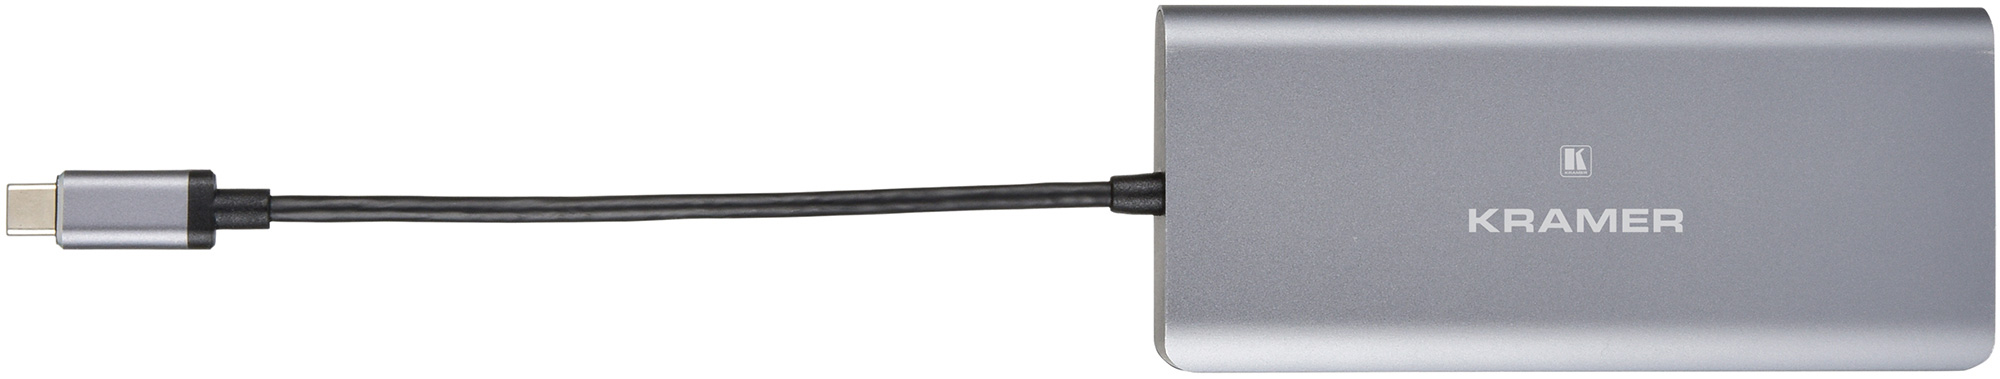 Kramer KDOCK-2 USB-C Hub Multiport Adapter - 4k@30 HDMI Output - USB 3.0/-C Data & Charging - Ethernet KR-KDOCK-2